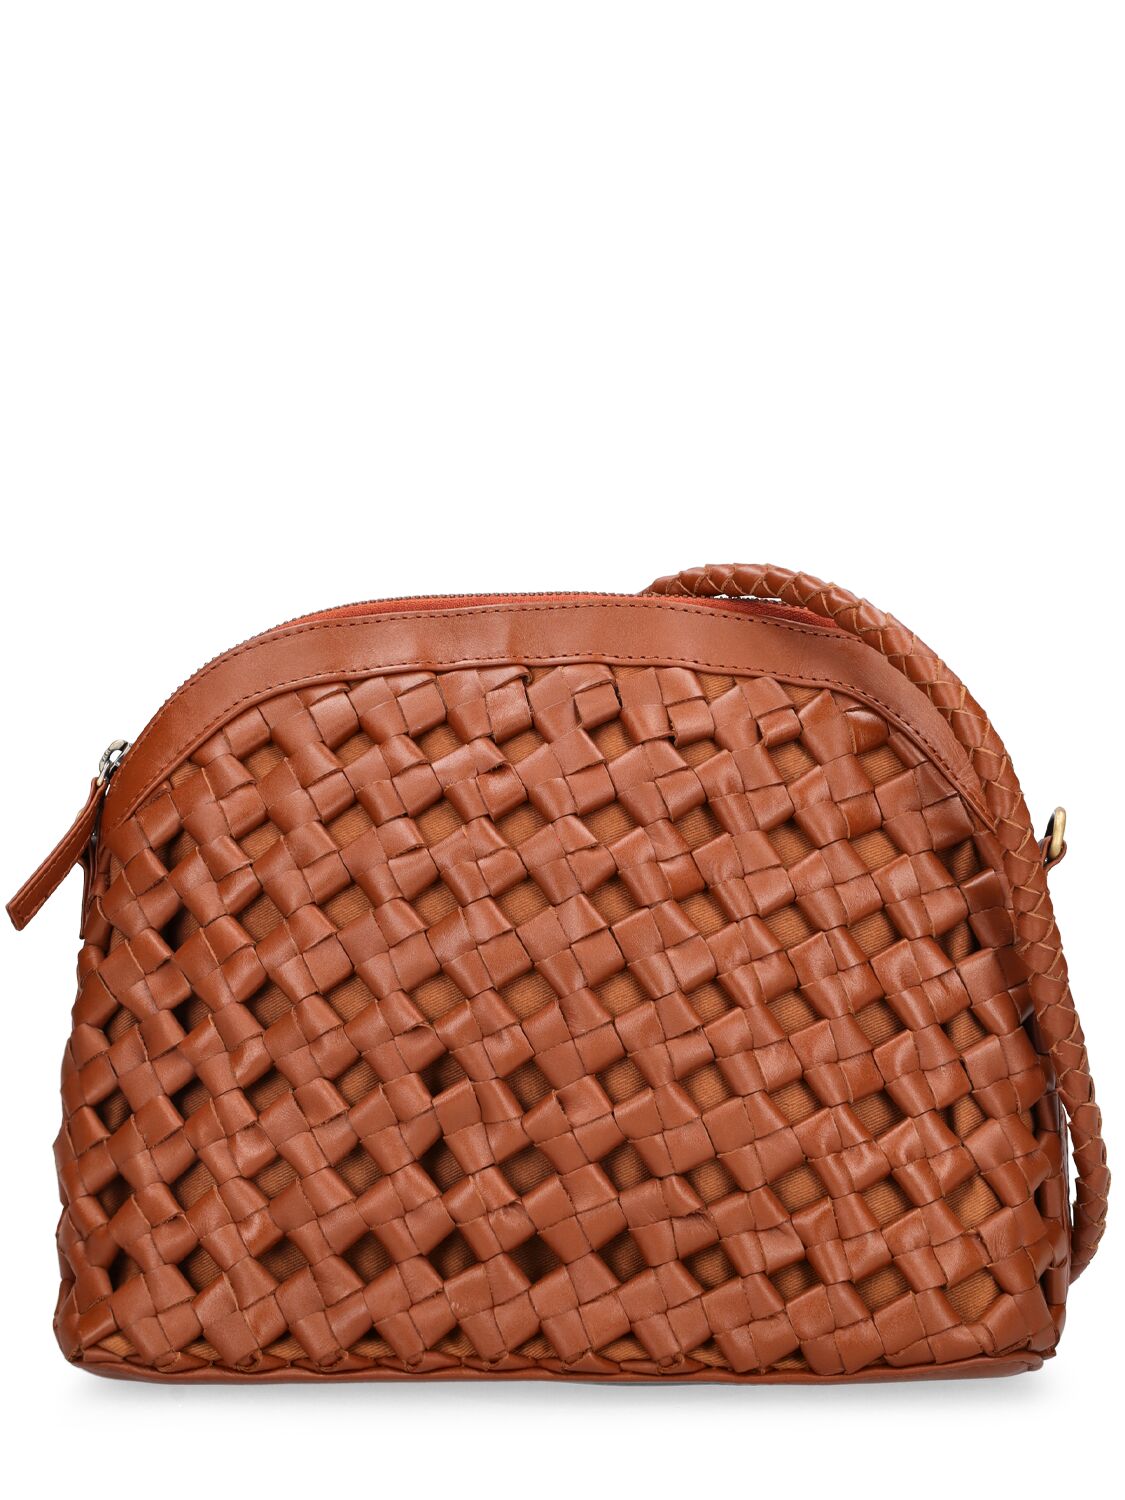 Bembien Carmen Woven Leather Shoulder Bag In Sienna